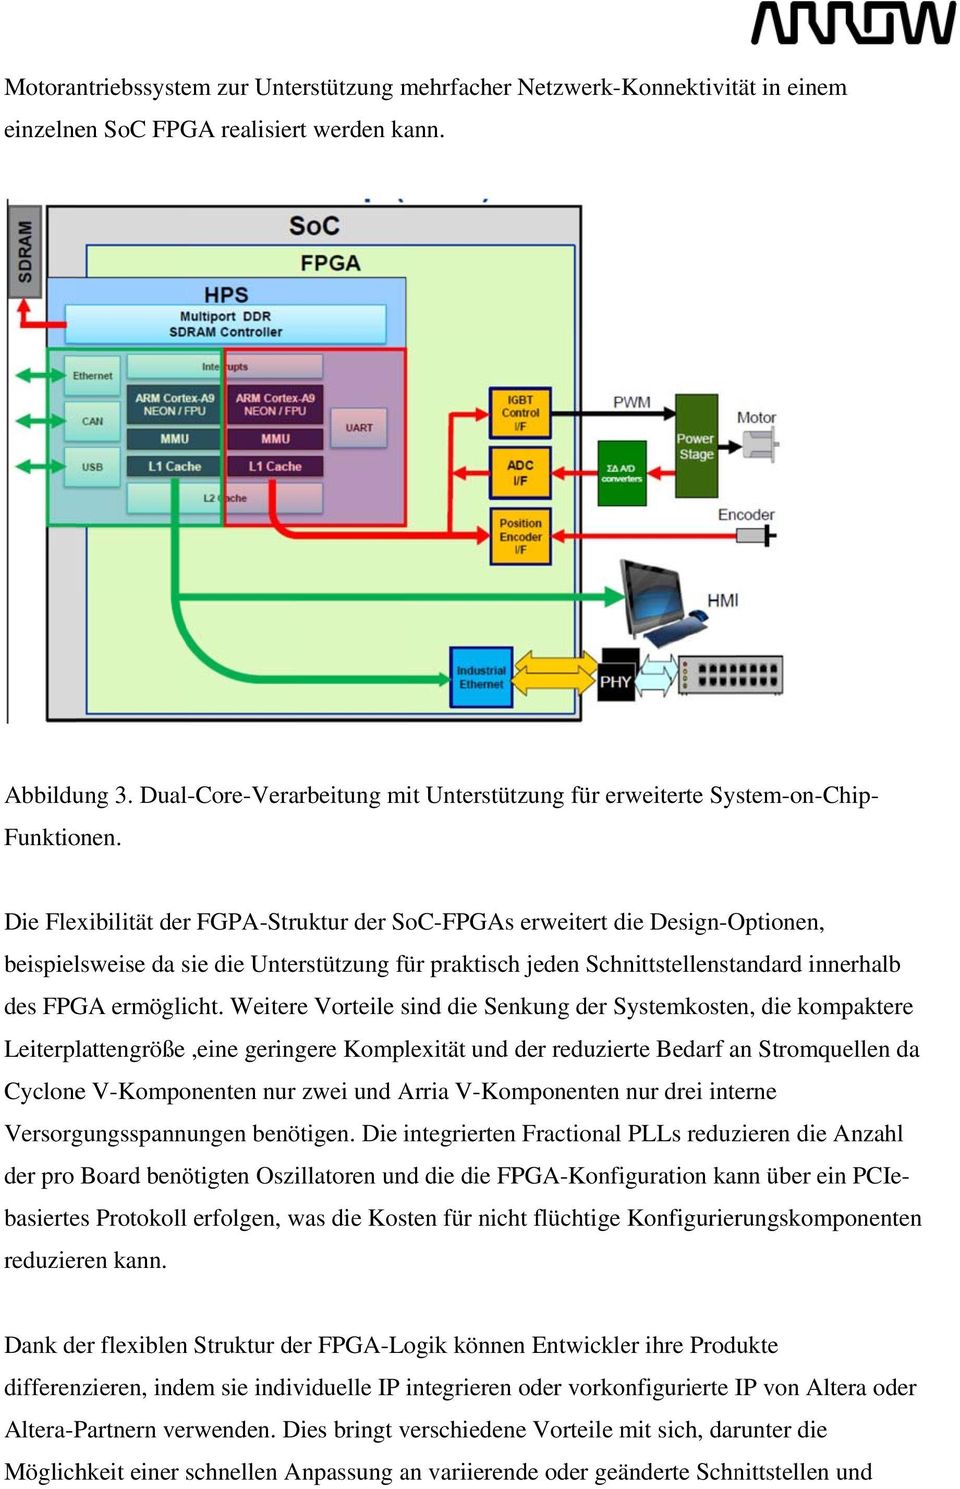 Die Flexibilität der FGPA-Struktur der SoC-FPGAs erweitert die Design-Optionen, beispielsweise da sie die Unterstützung für praktisch jeden Schnittstellenstandard innerhalb des FPGA ermöglicht.